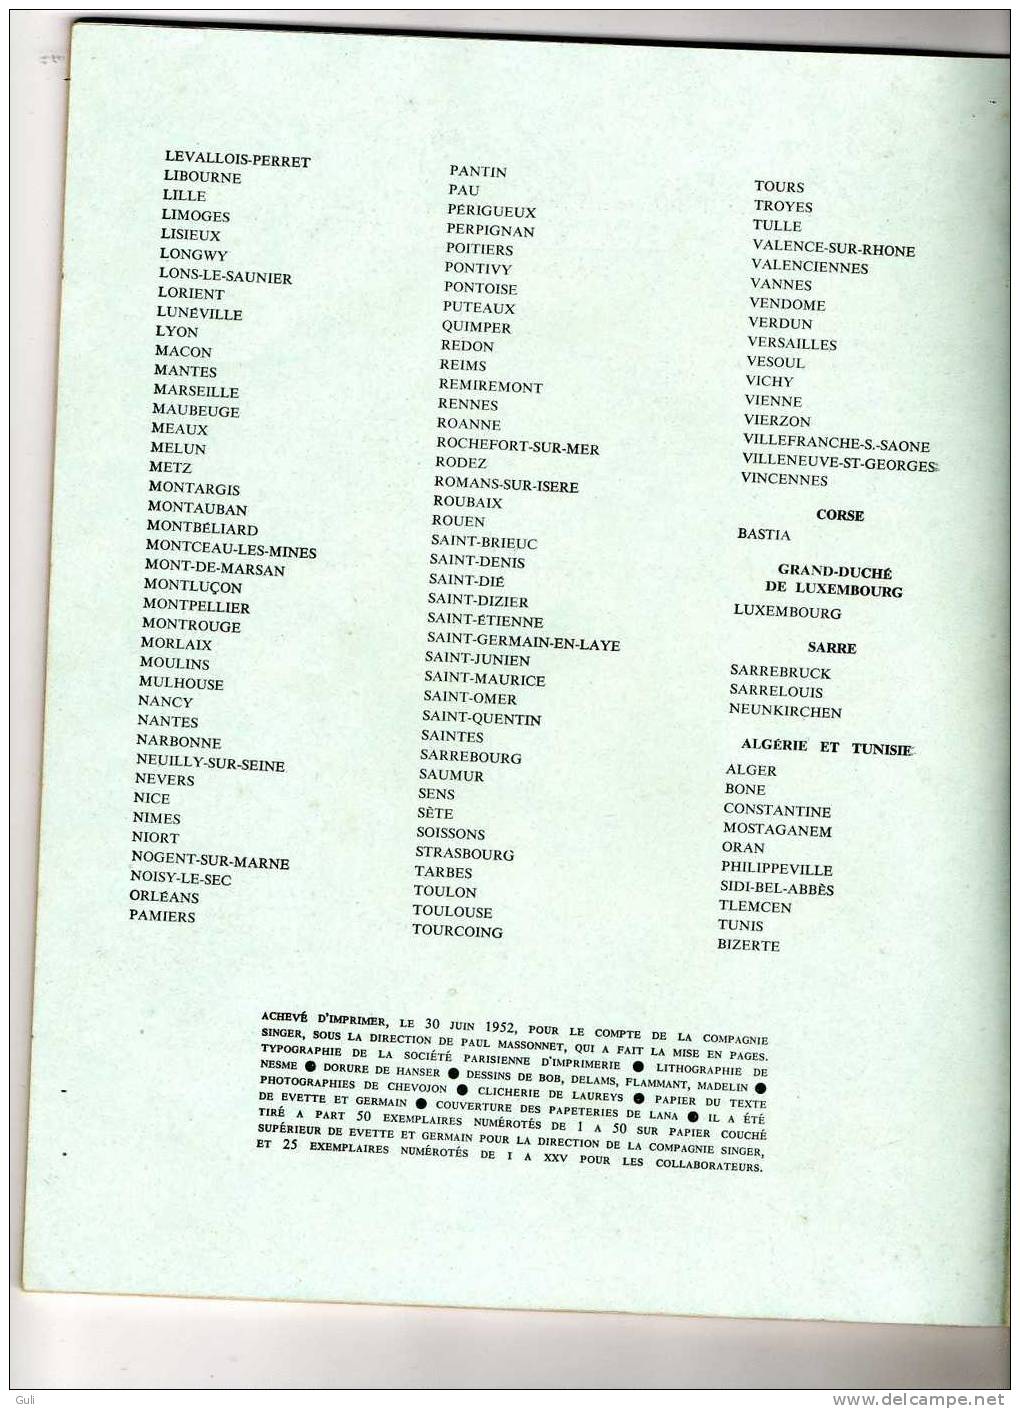 GUIDE-Livre-Manuel- Publicité SINGER-Machine à COUDRE-Conseils d'Utilisation-64 pages-année: 1952-Format =21 x 27 cms-